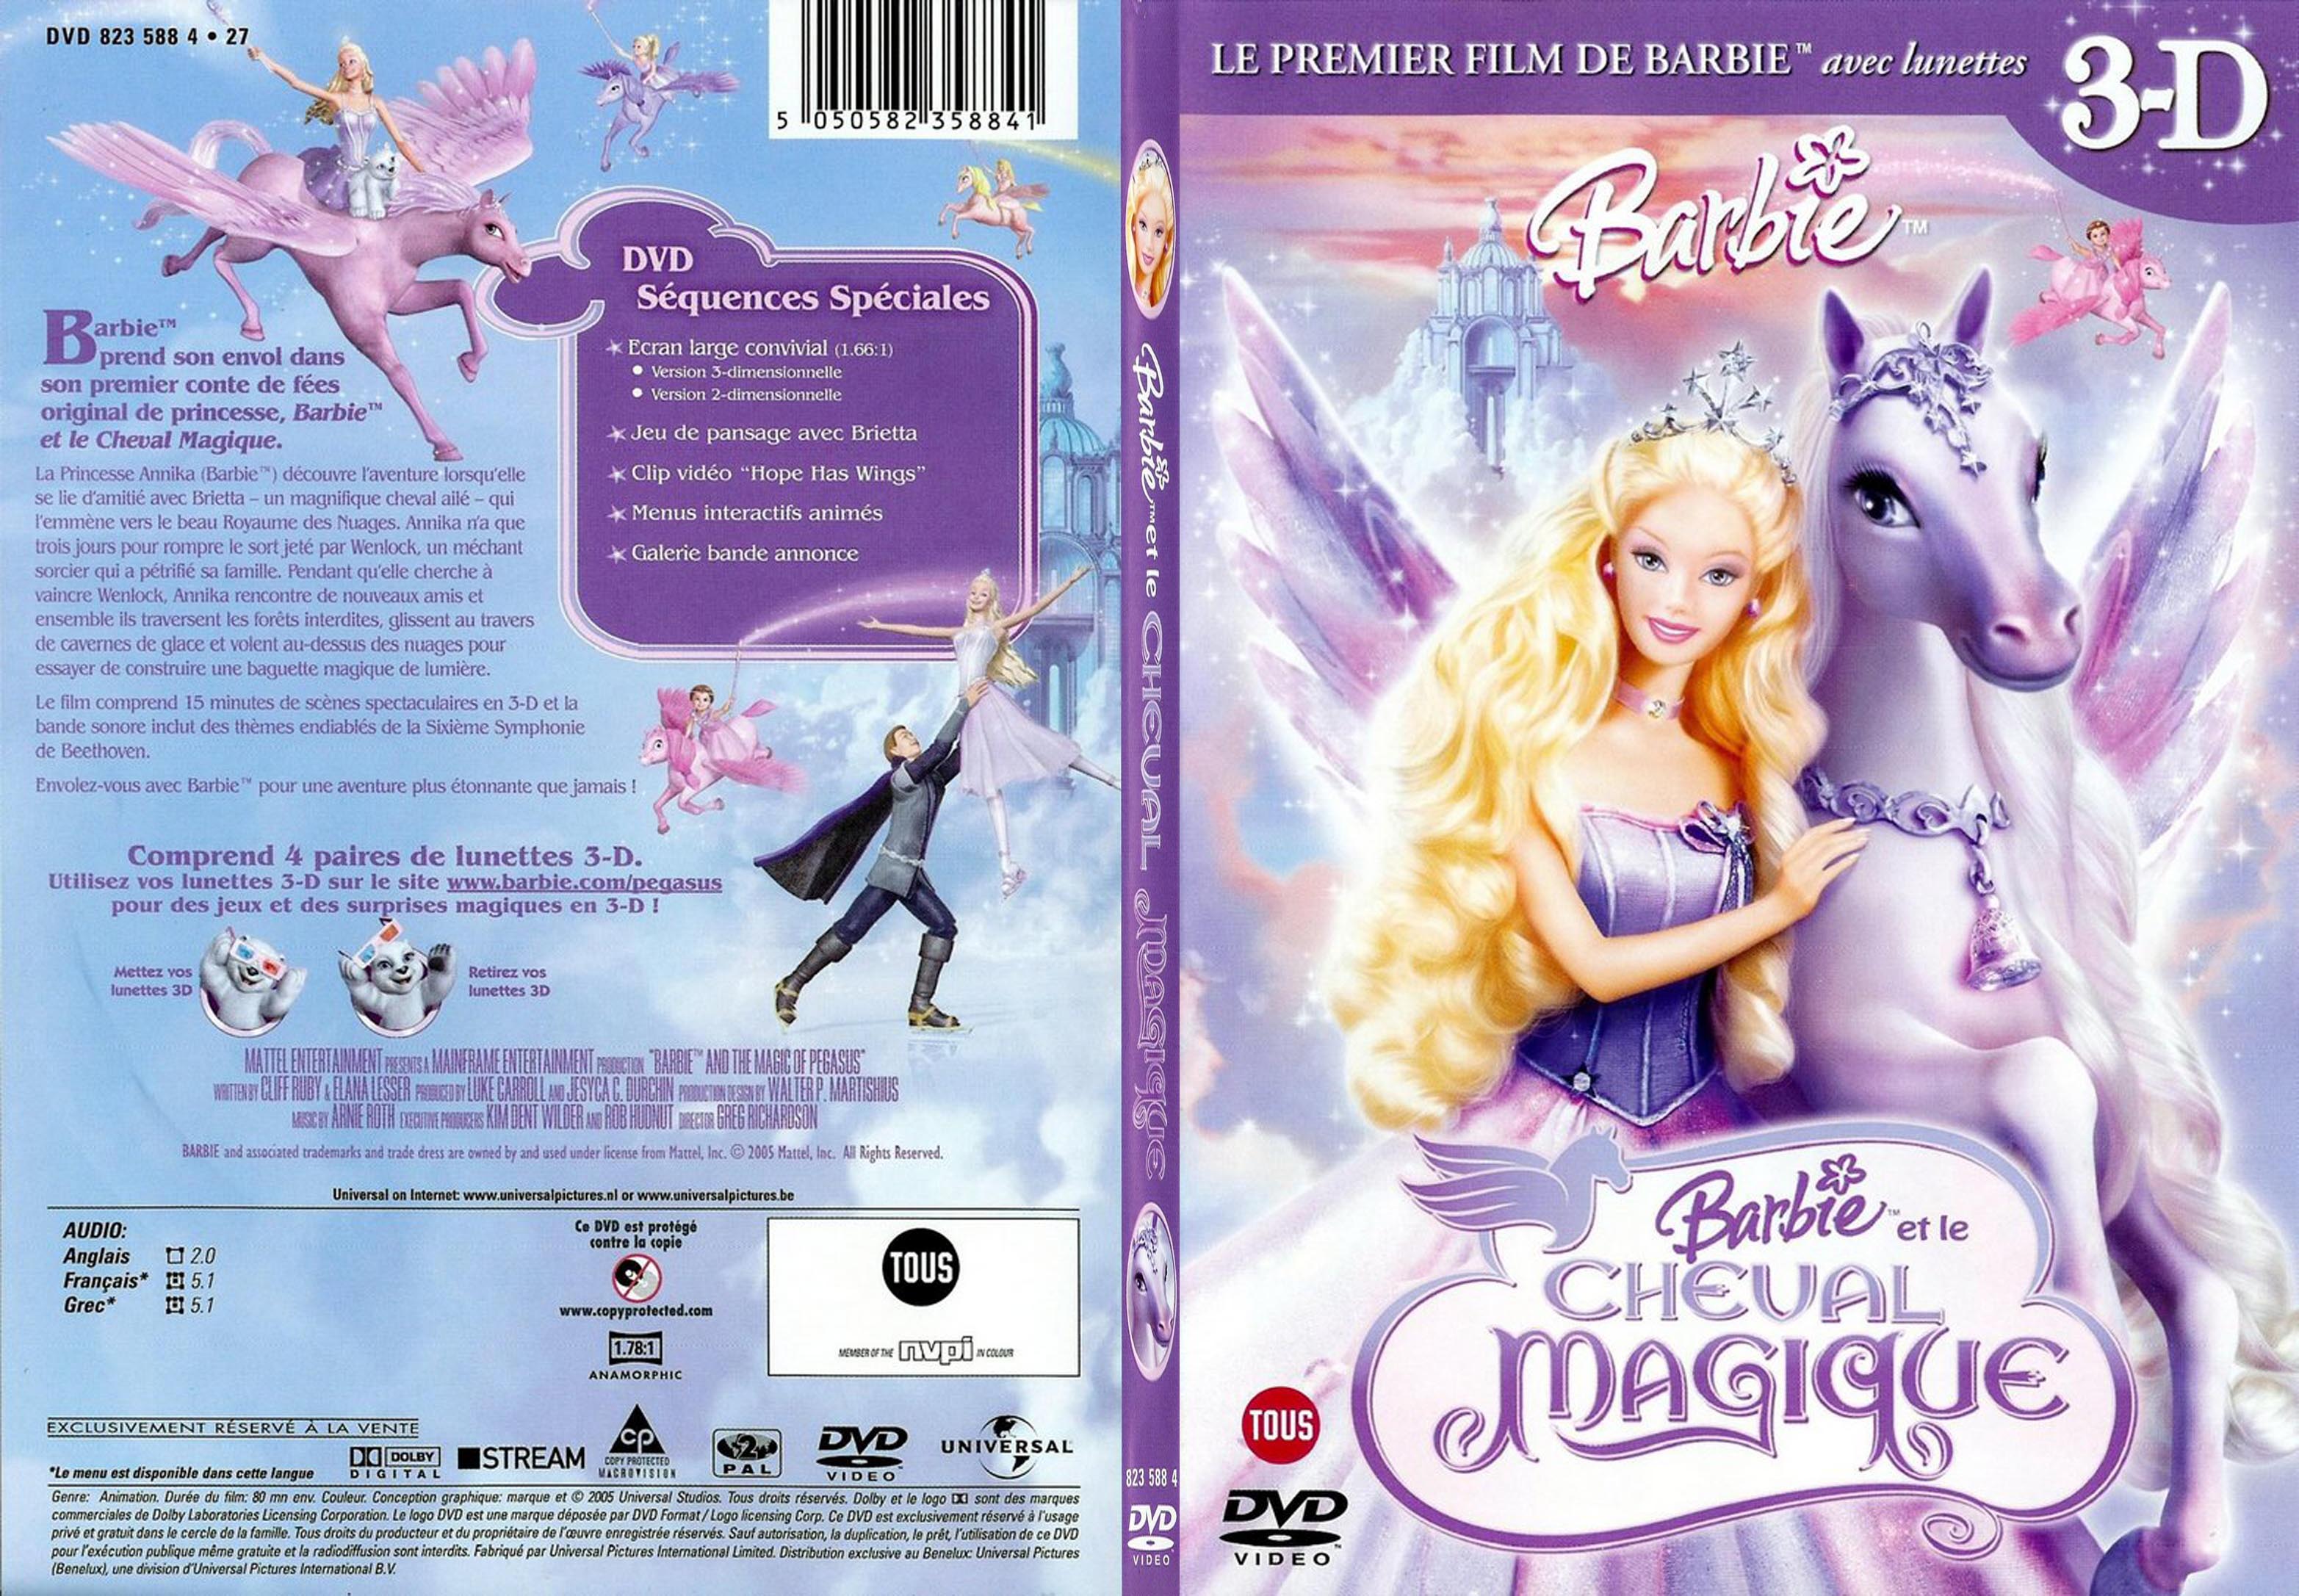 Jaquette DVD Barbie et le cheval magique - SLIM